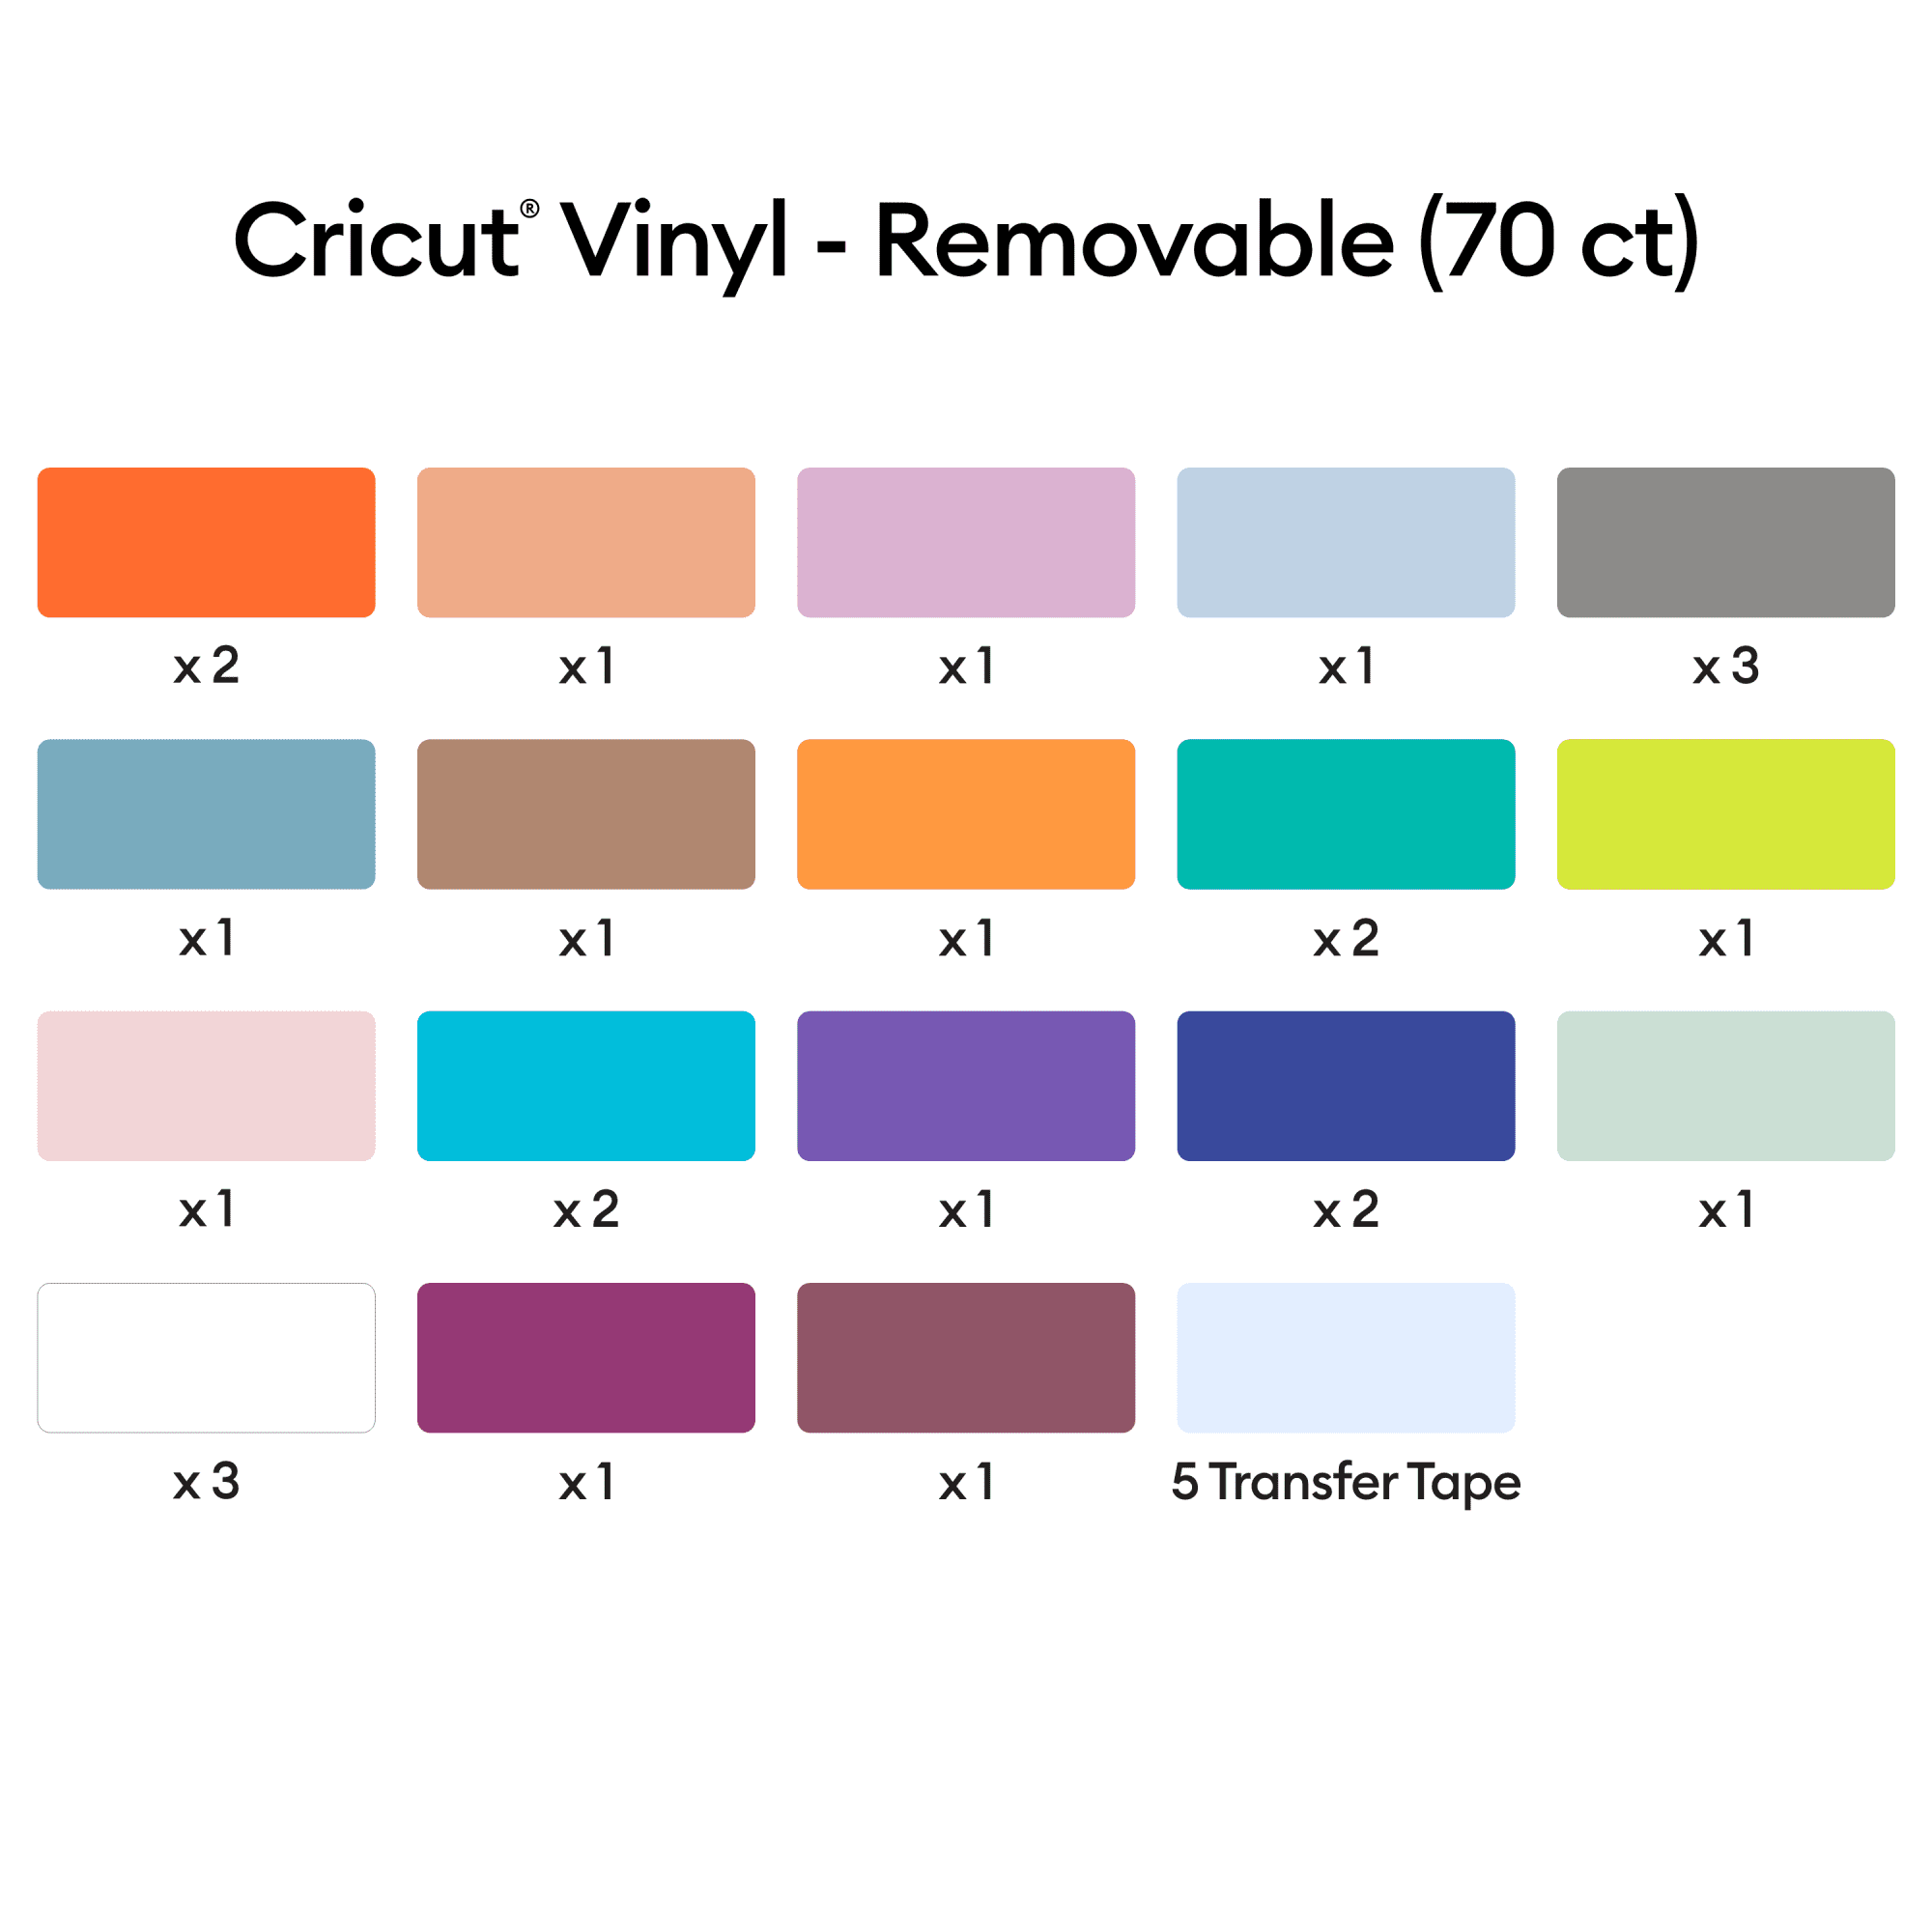 Vinyl, Ultimate Sampler - Permanent (70 ct)